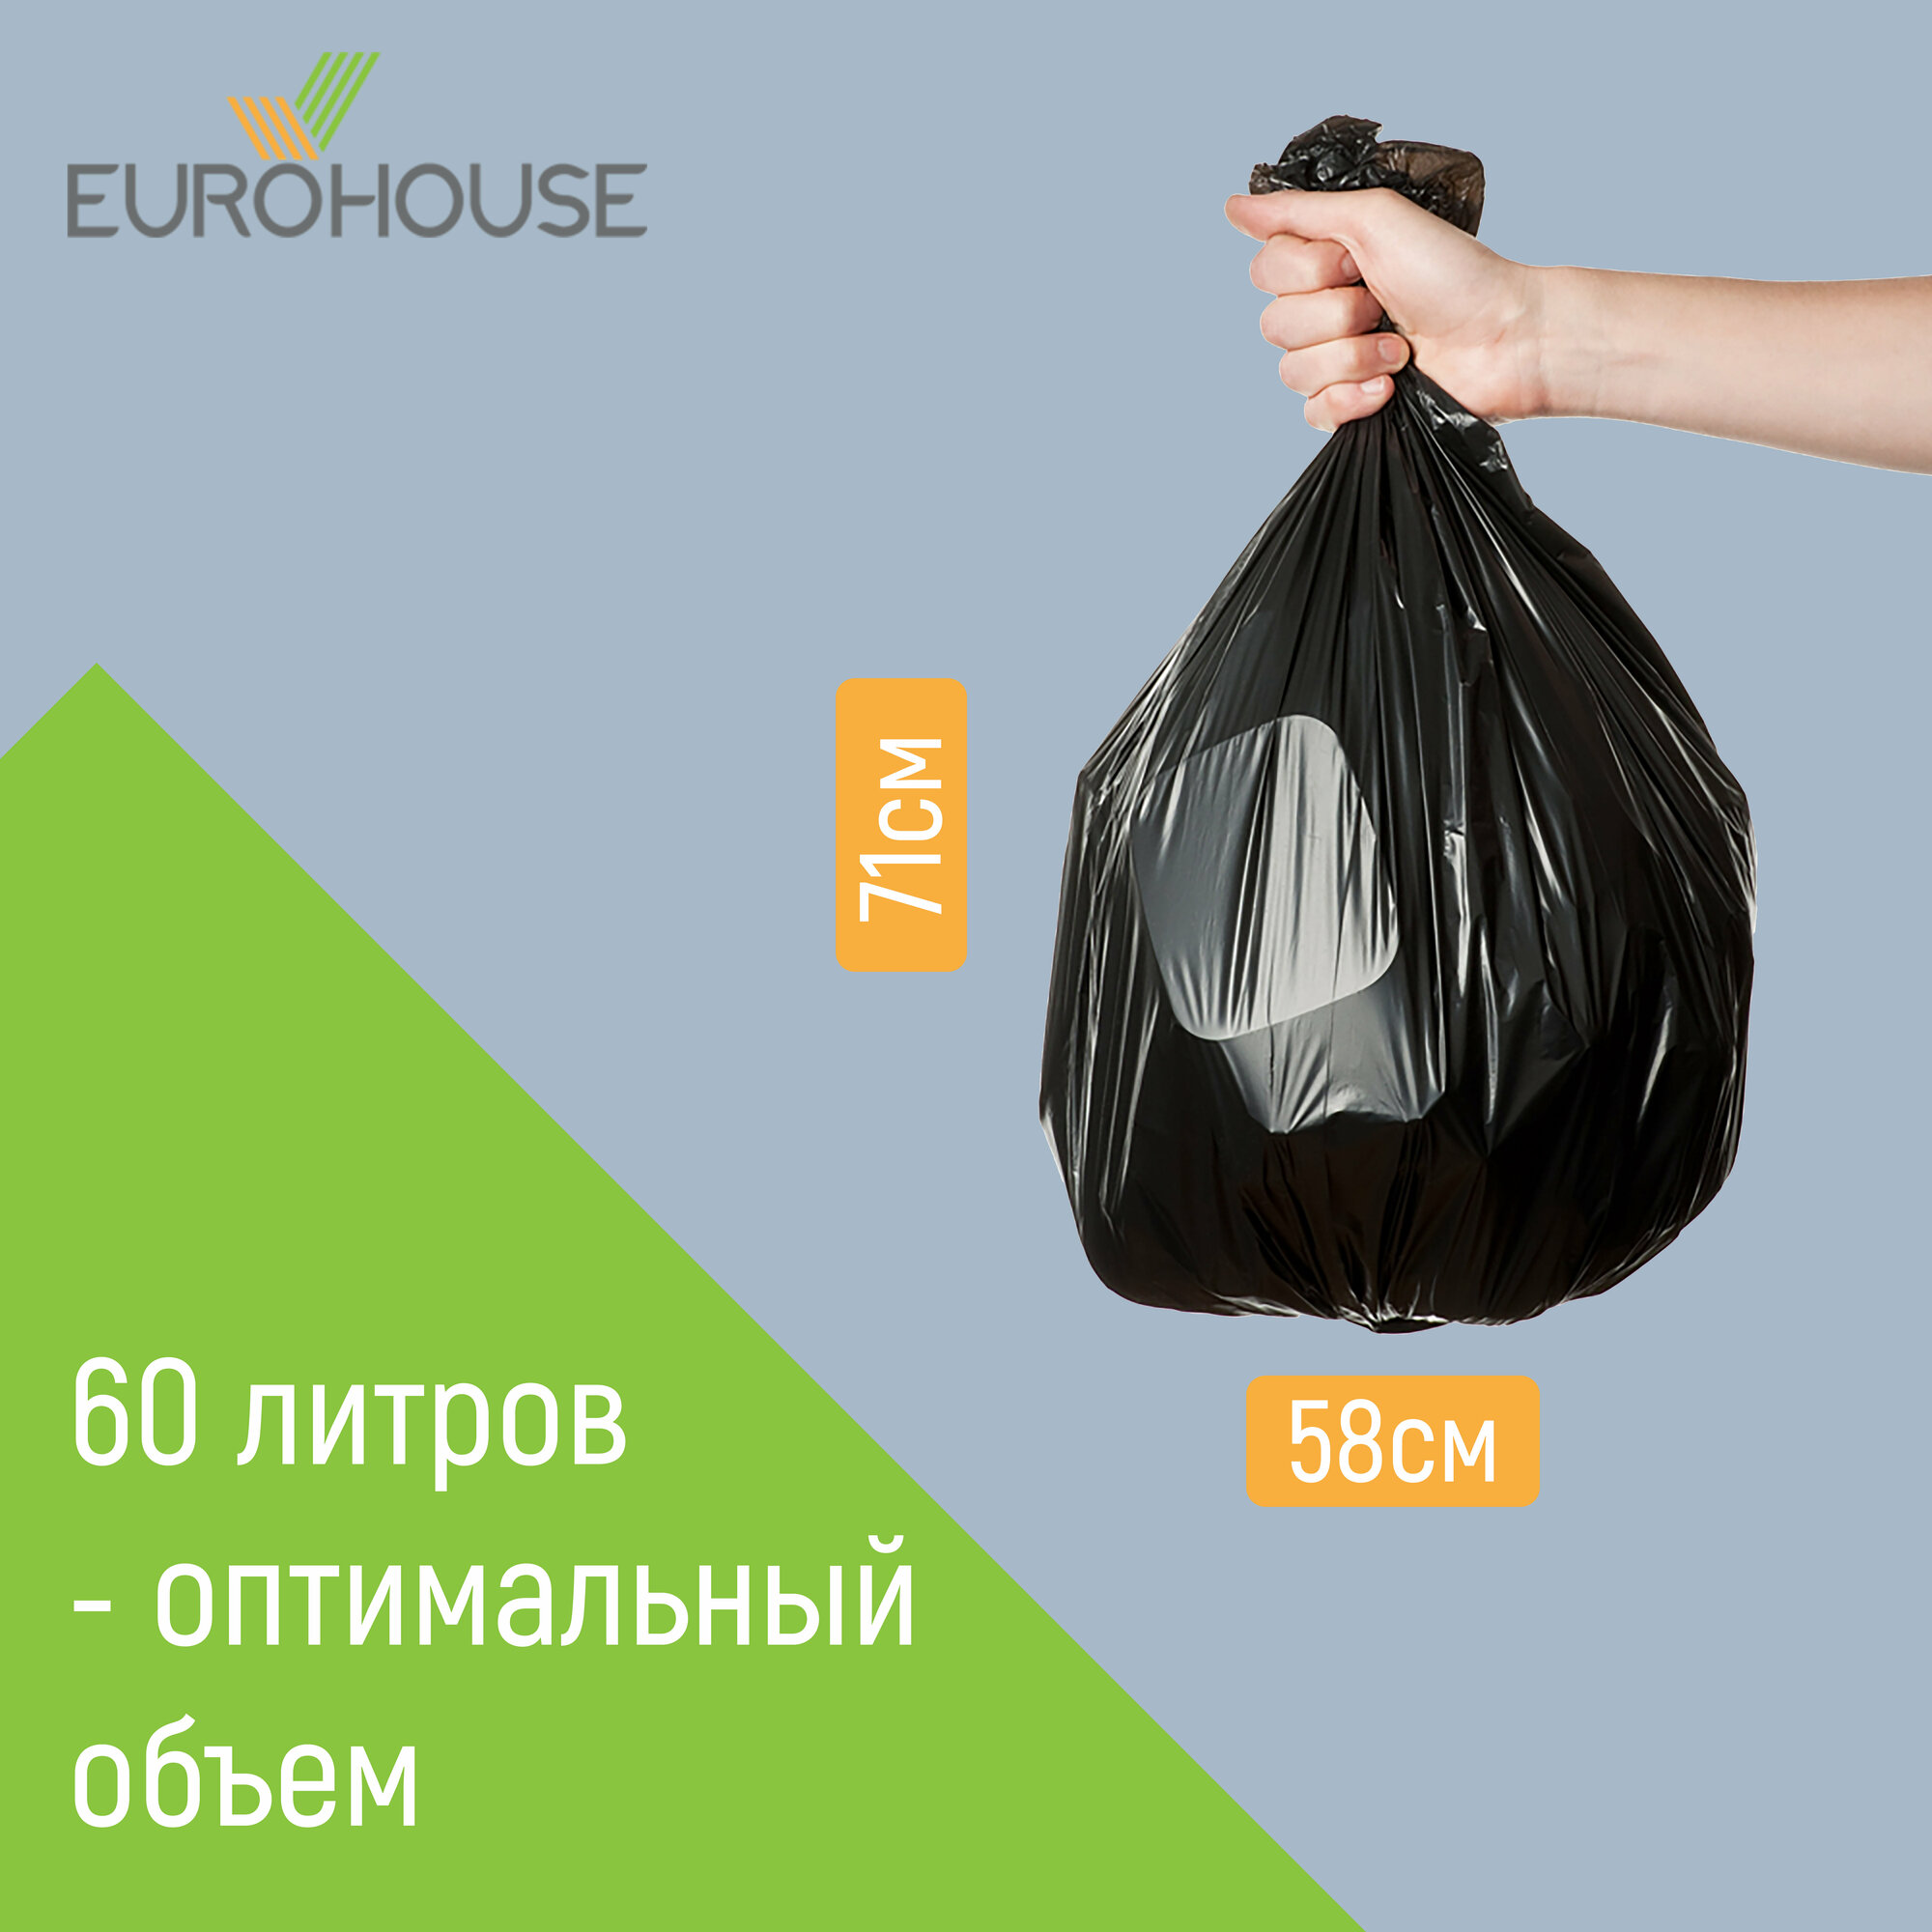 Мешки для мусора EUROHOUSE 60 литров, 20 штук